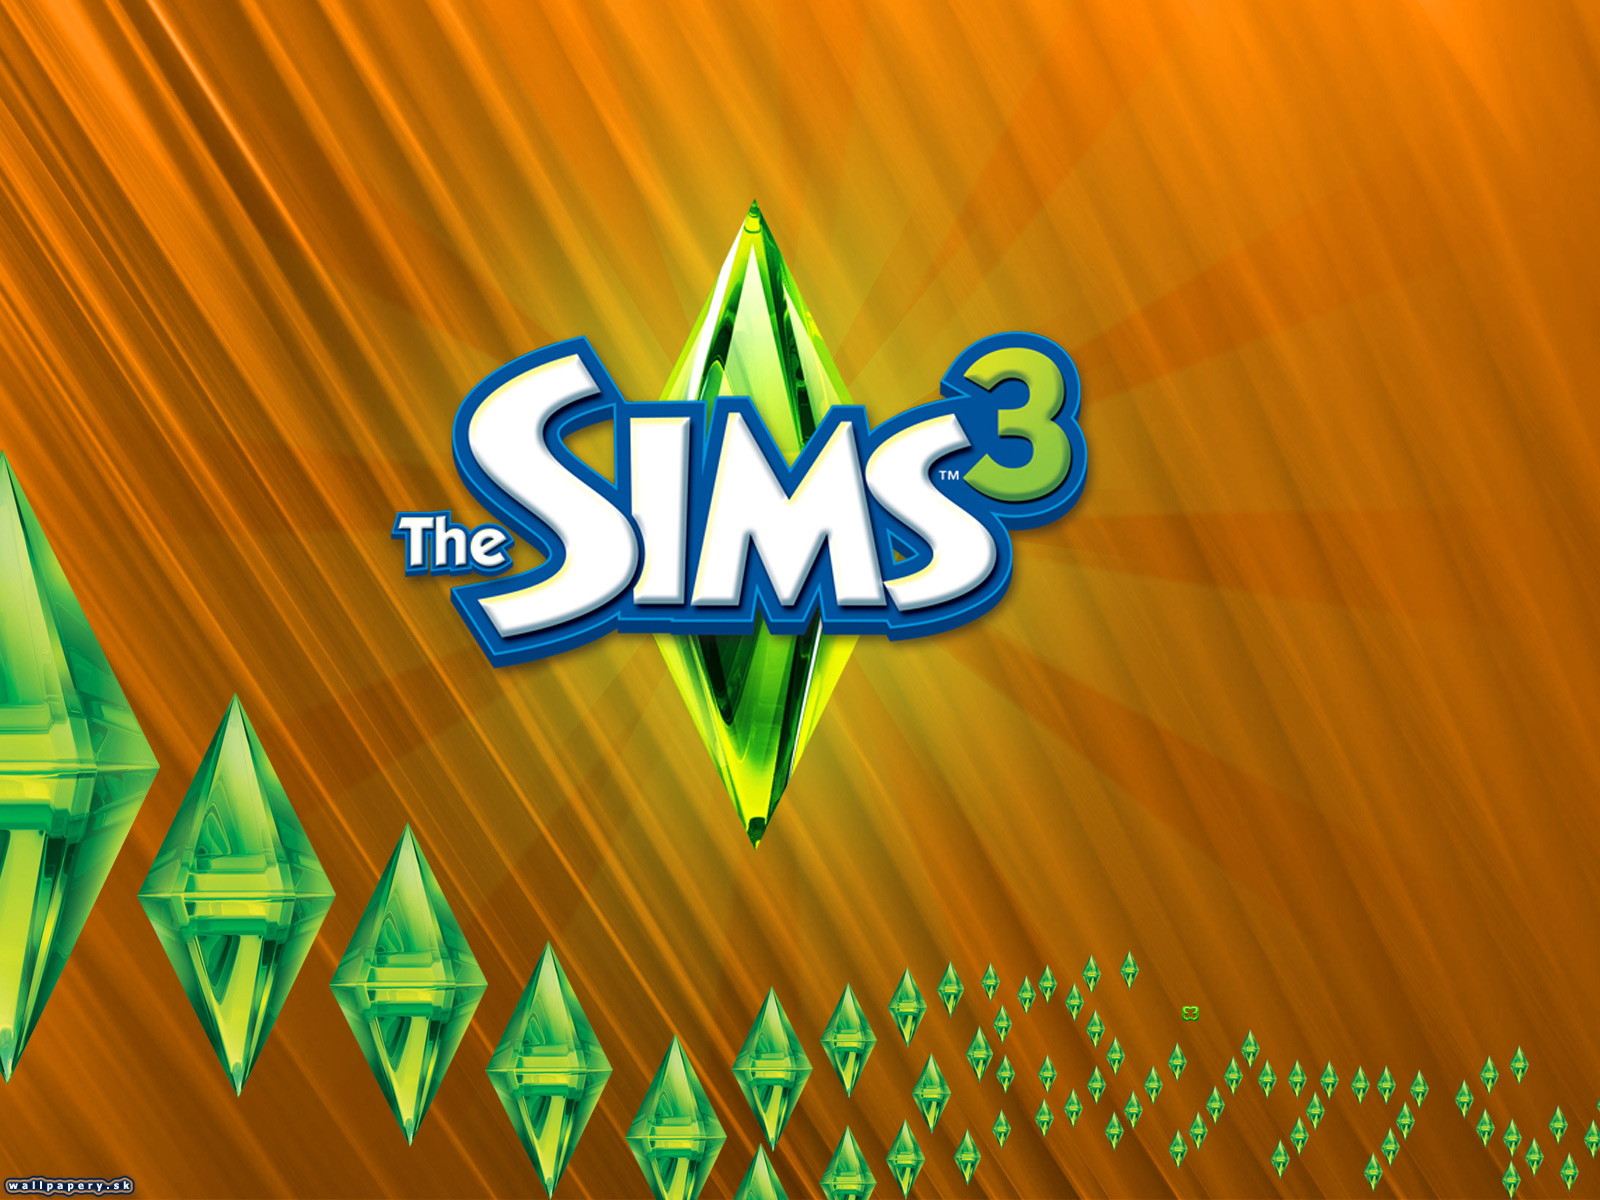 Принять участие симс. The SIMS 3 (Wii). SIMS 3 фон. Симс 3 заставка. SIMS логотип.